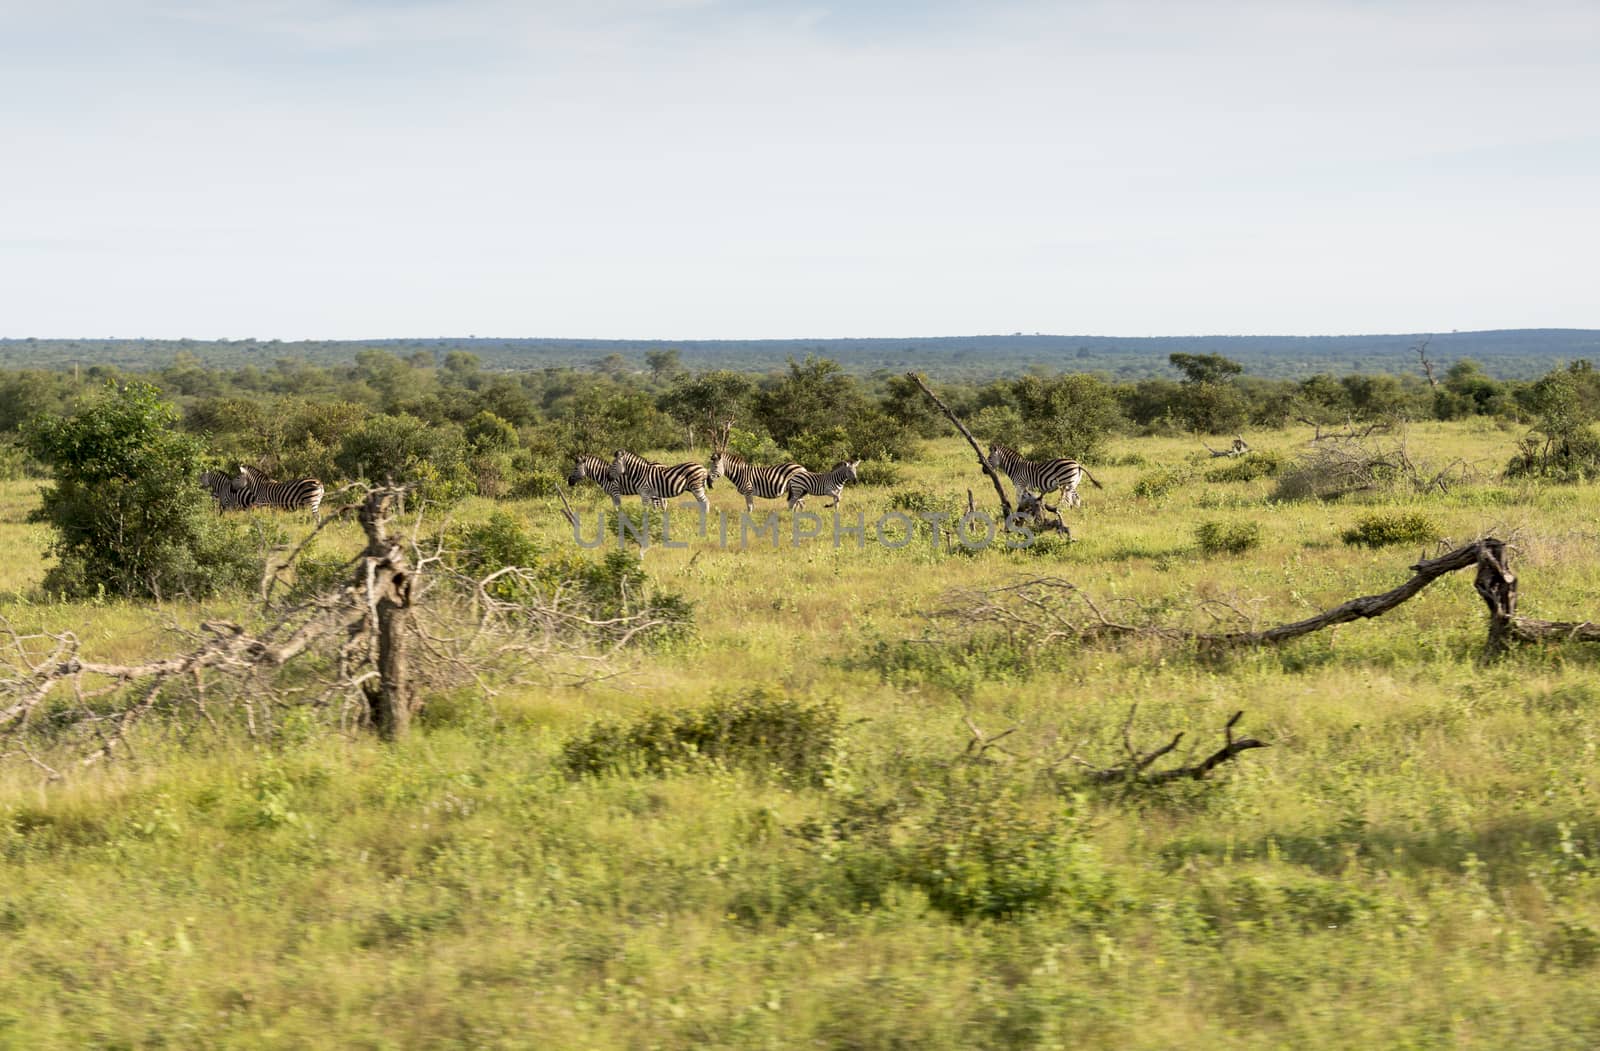 zebras in the kruger national reserve